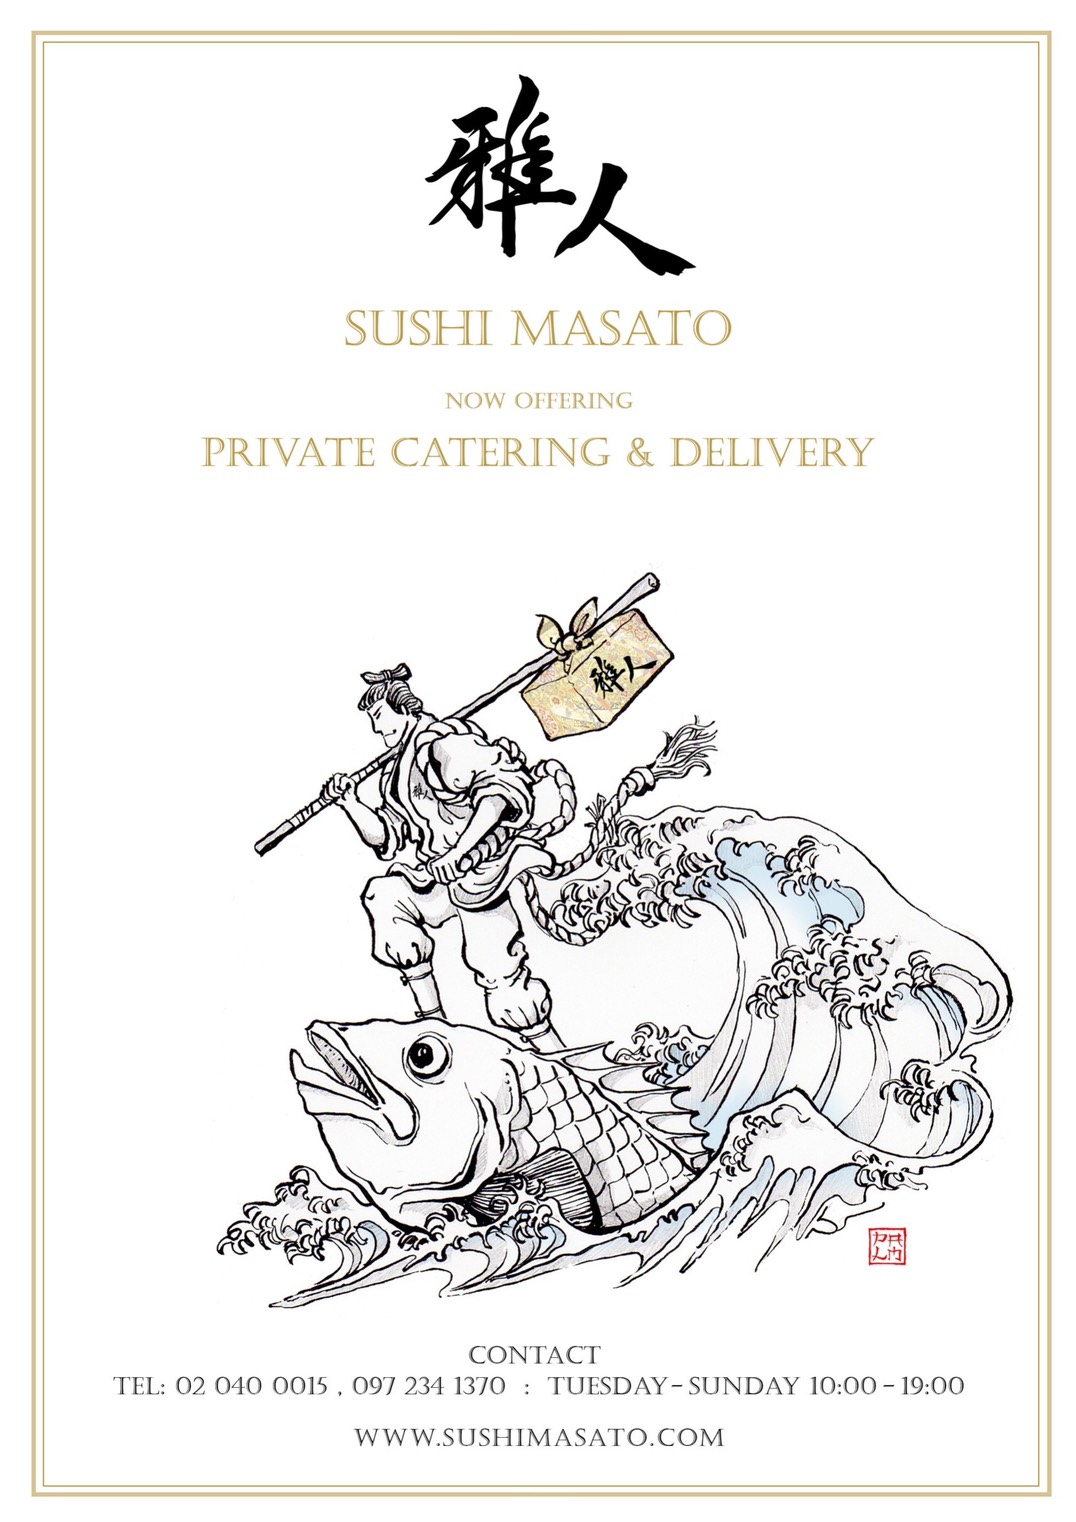 Sushi Masato delivery